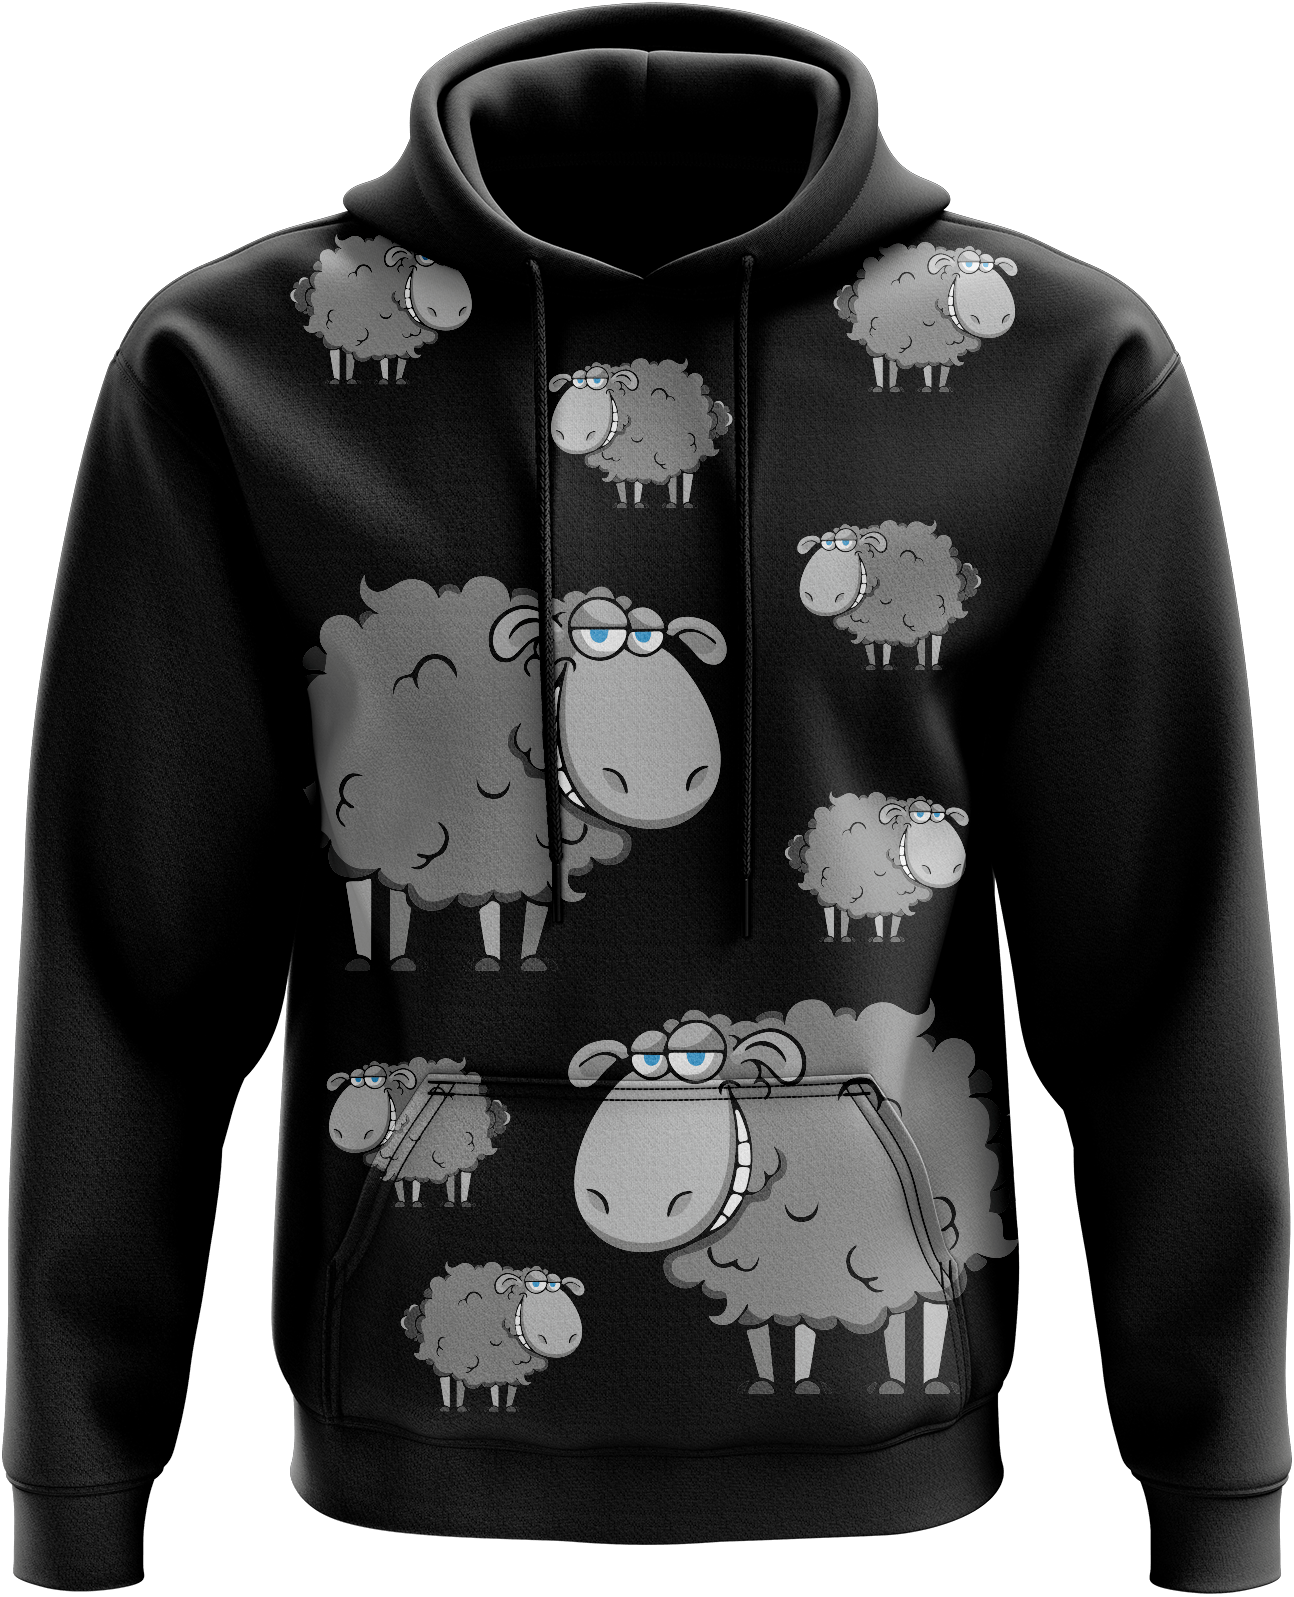 Black Sheep Hoodies - fungear.com.au